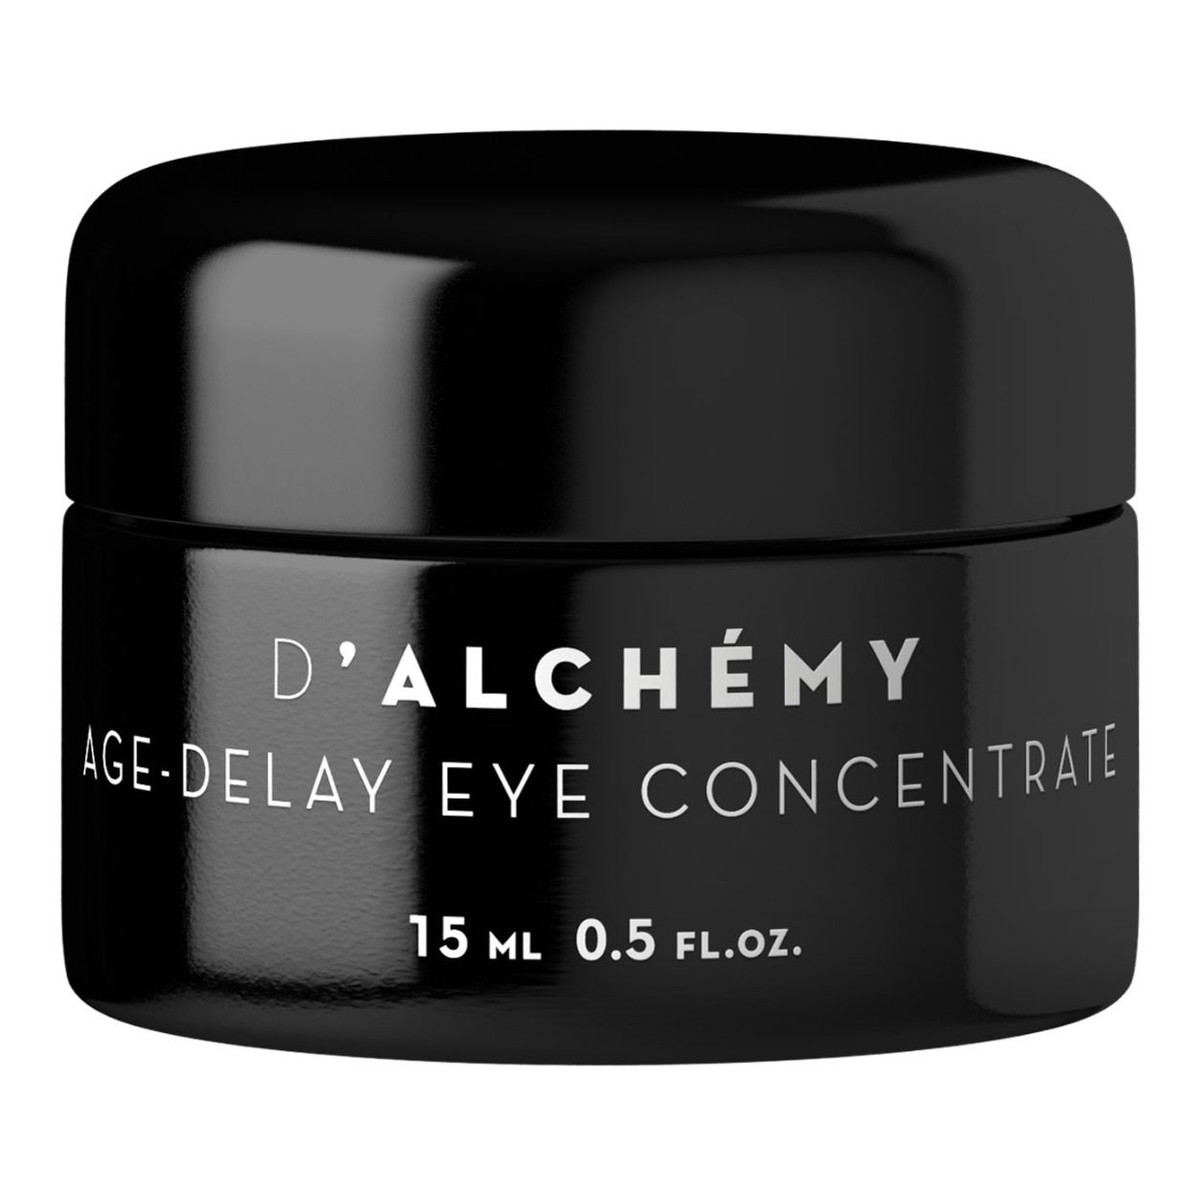 D'Alchemy AGE-DELAY EYE CONCENTRATE Koncentrat pod oczy niwelujący oznaki starzenia 15ml